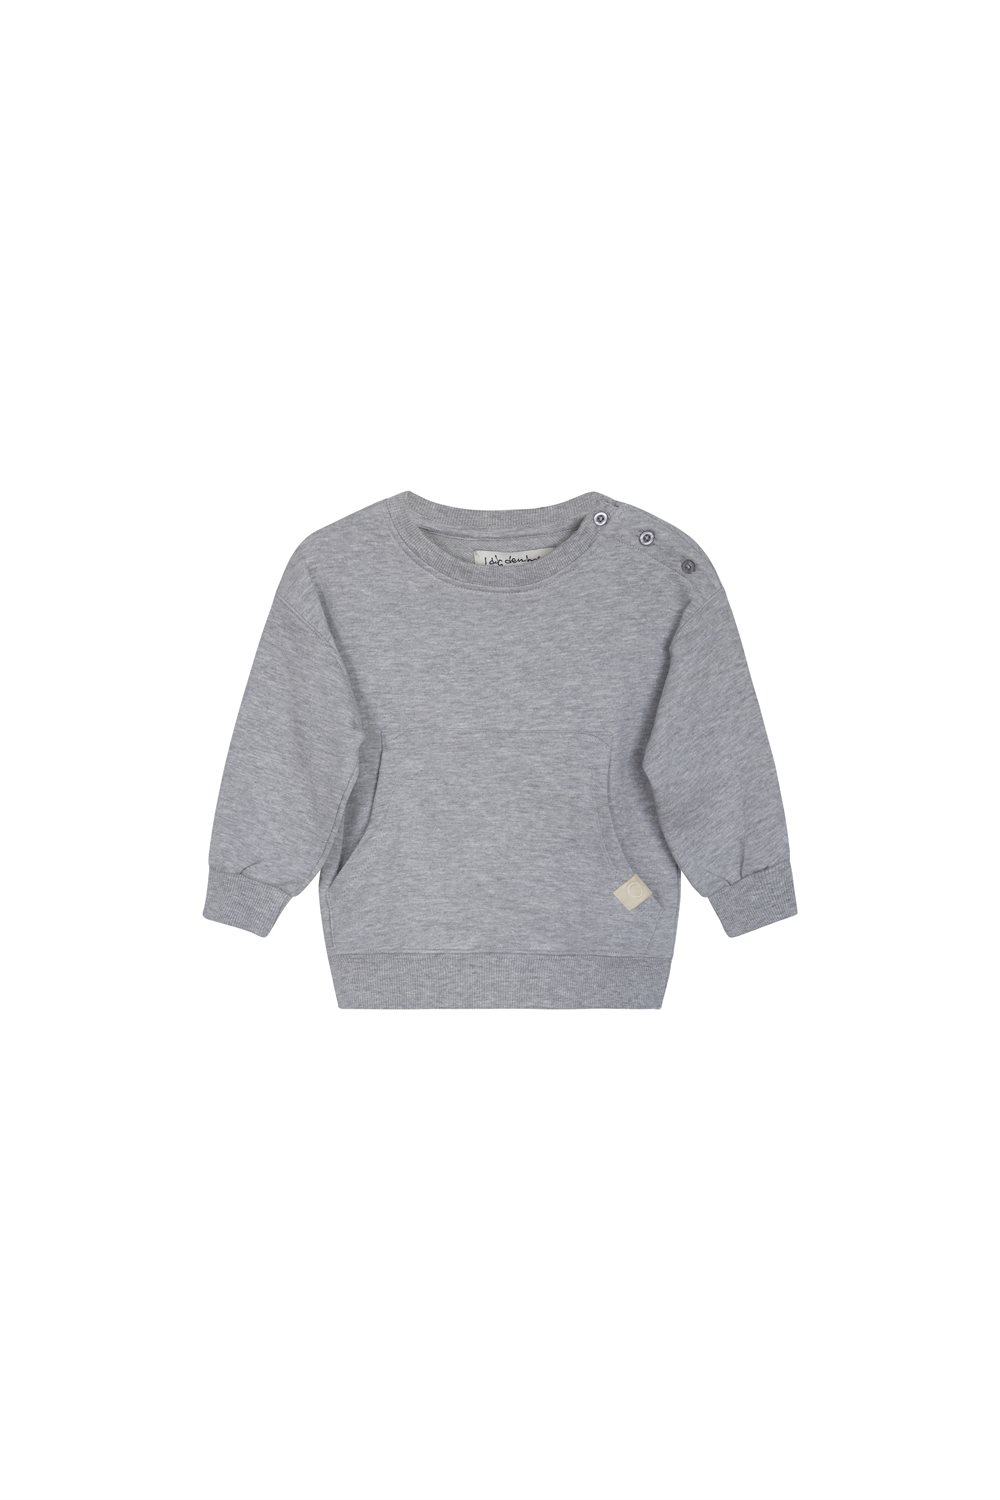 Mike sweater organic grey-melange